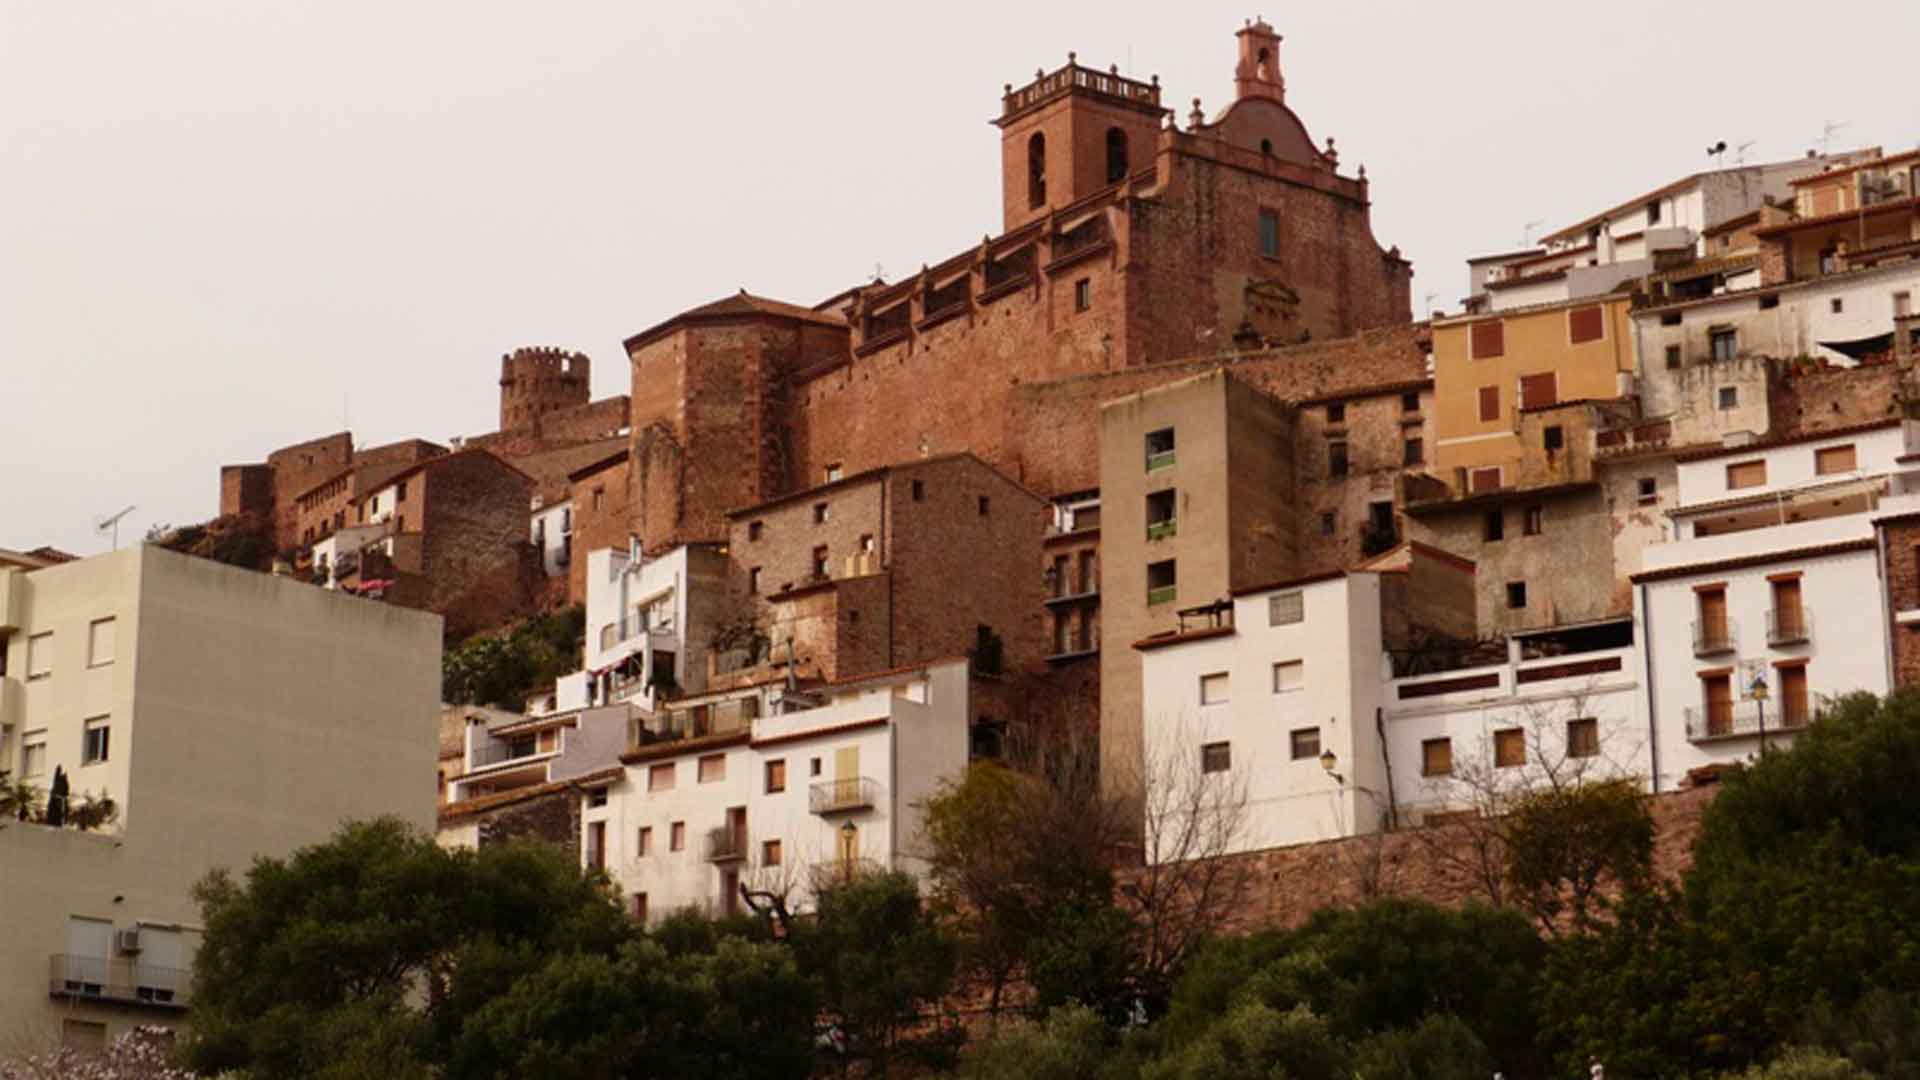 Una guía turística de Castellón "no autorizada" se enfrenta a una multa de hasta 600.000 euros